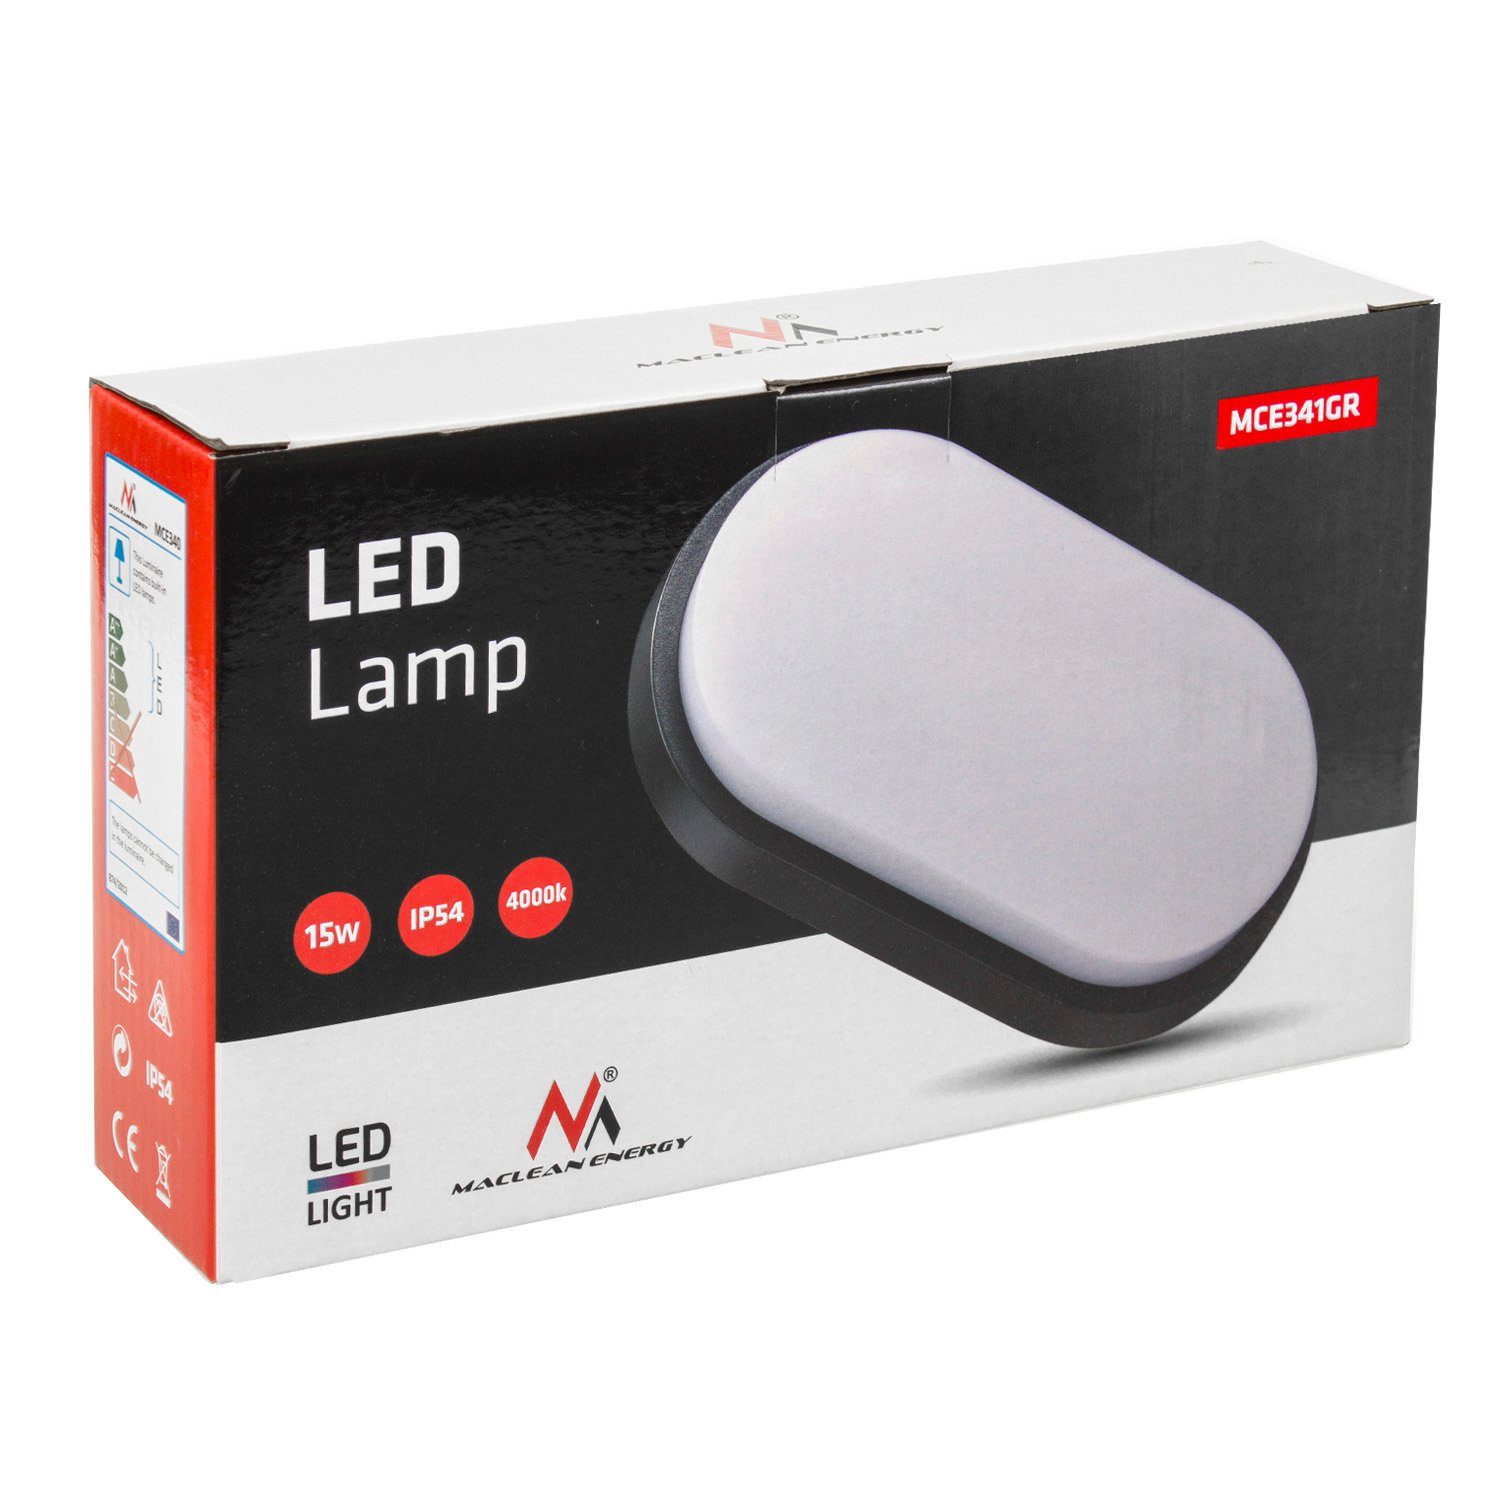 Wand- LED 15W 1100lm Deckenleuchte MCE341, IP54 grau/weiß LED Maclean und Deckenleuchte